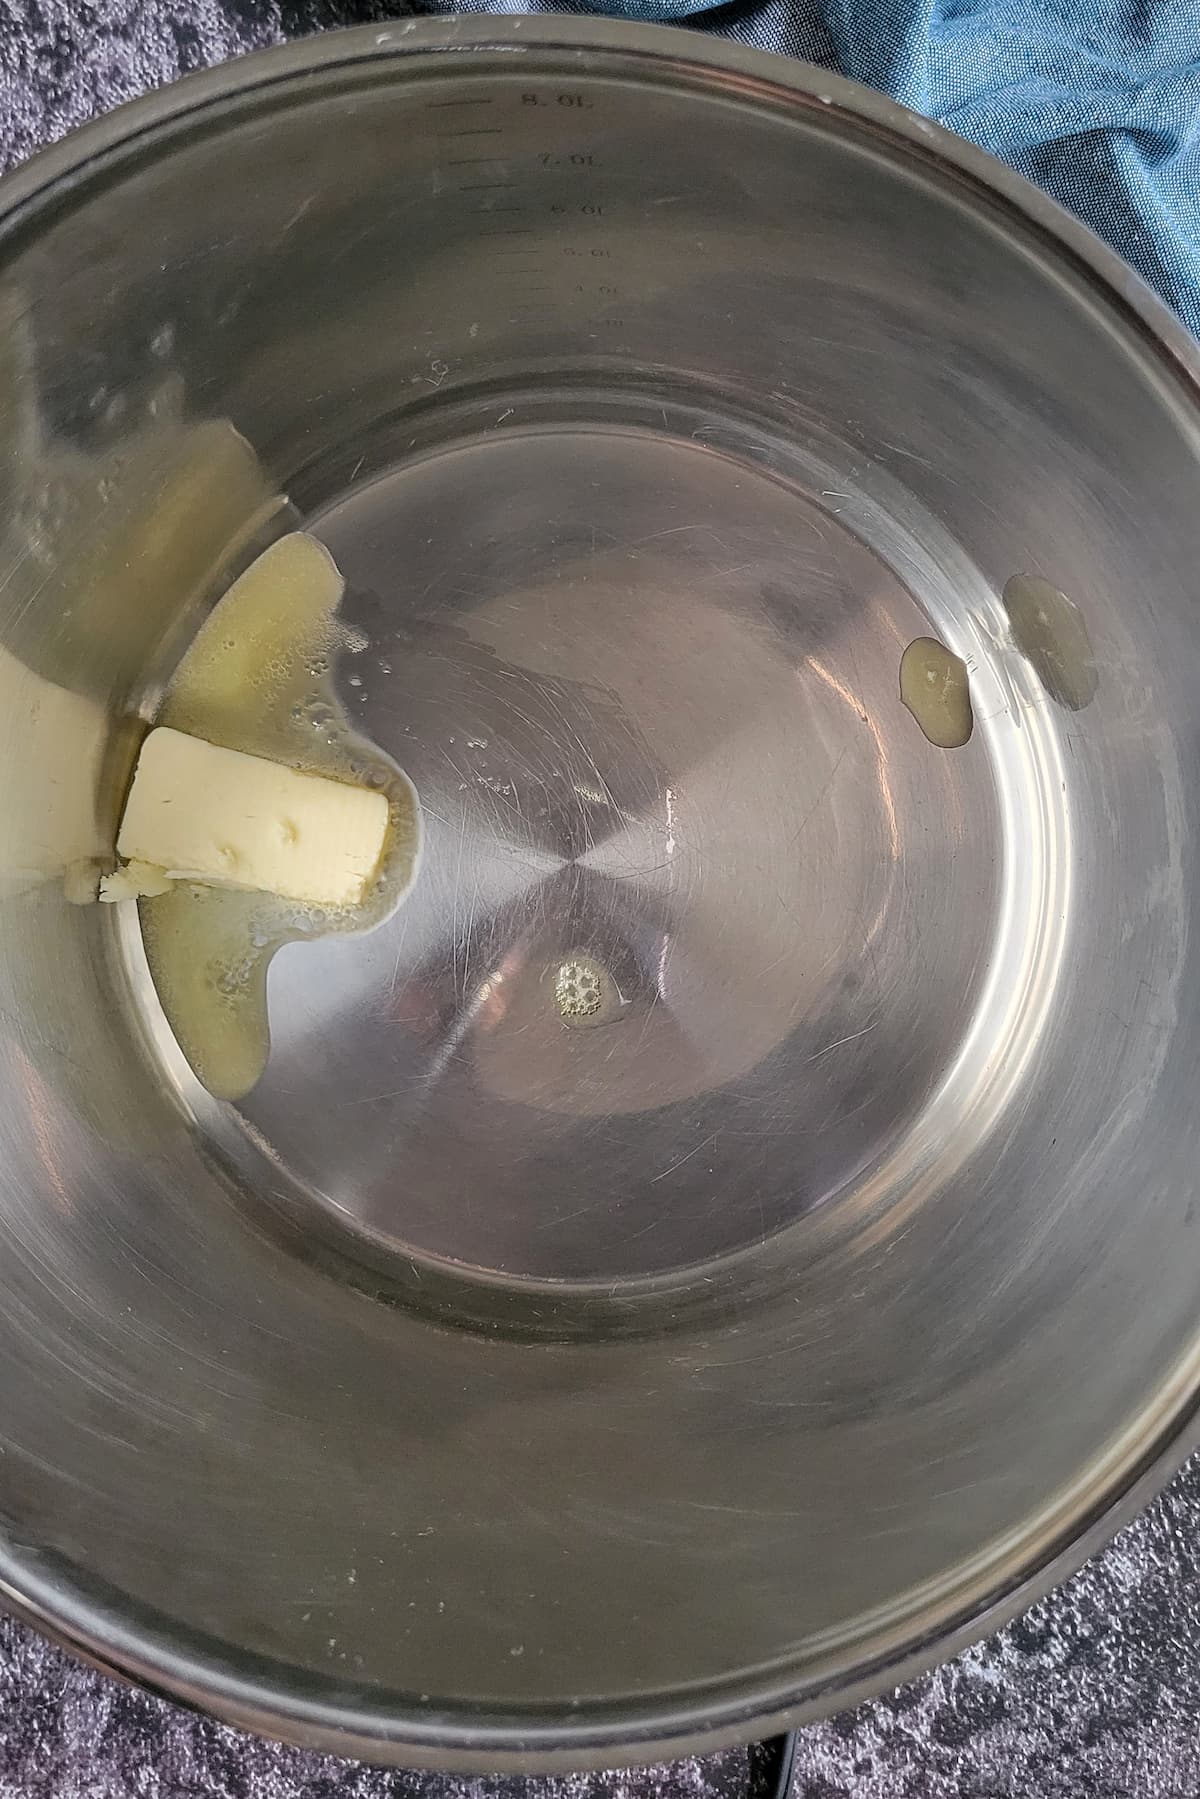 butter melting in a pot